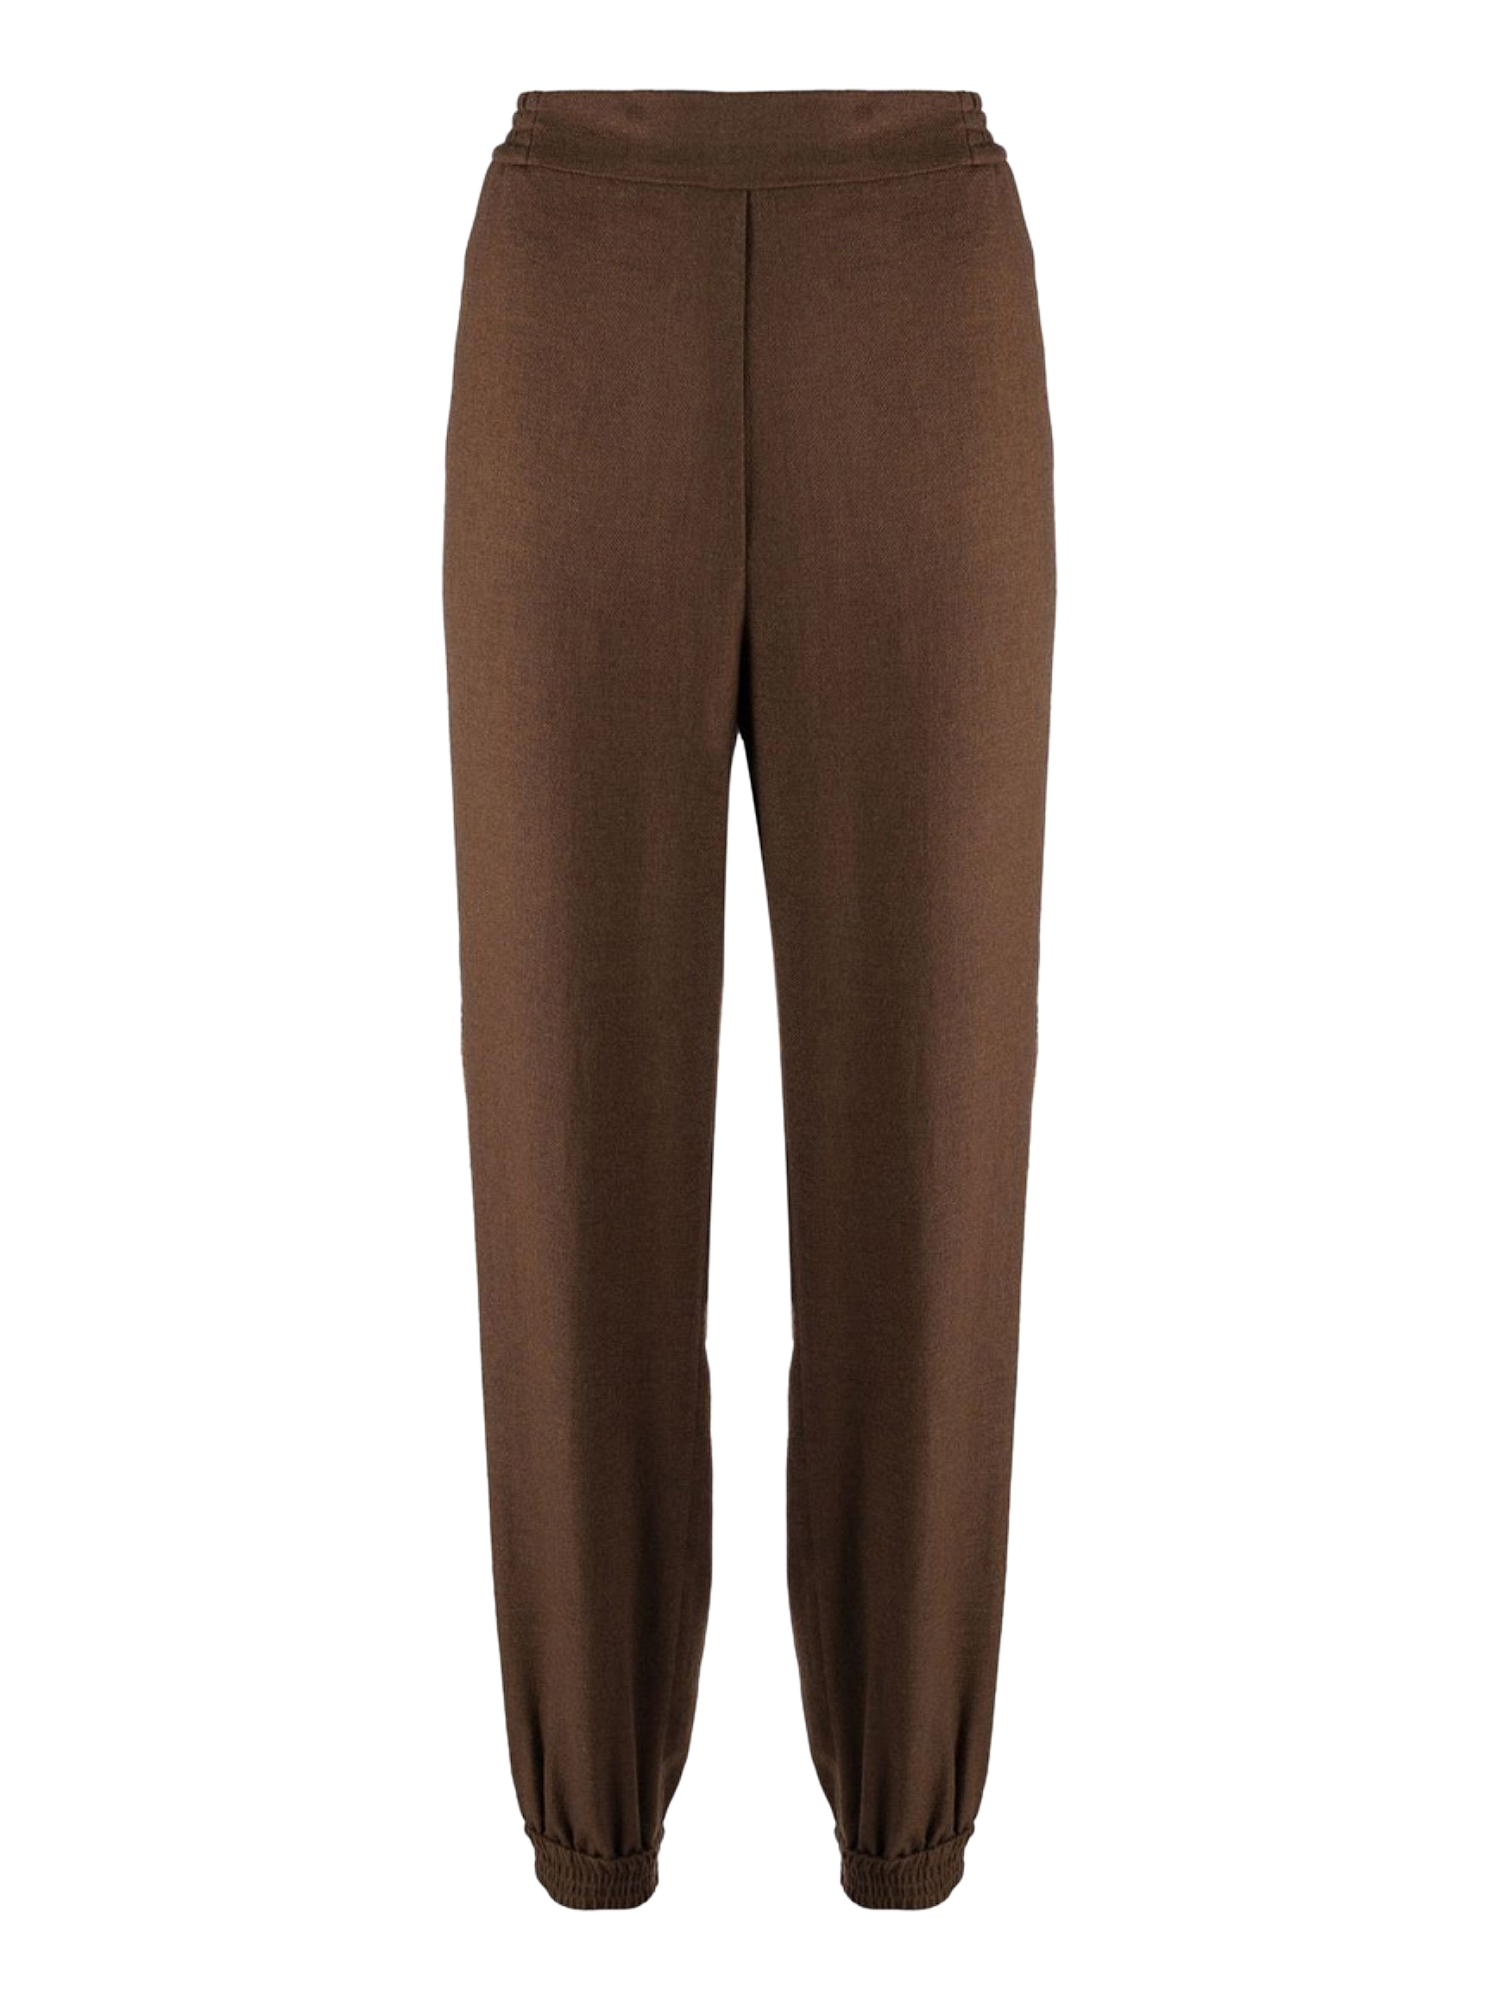 Pantalons Pour Femme - Etro - En Synthetic Fibers Brown - Taille:  -